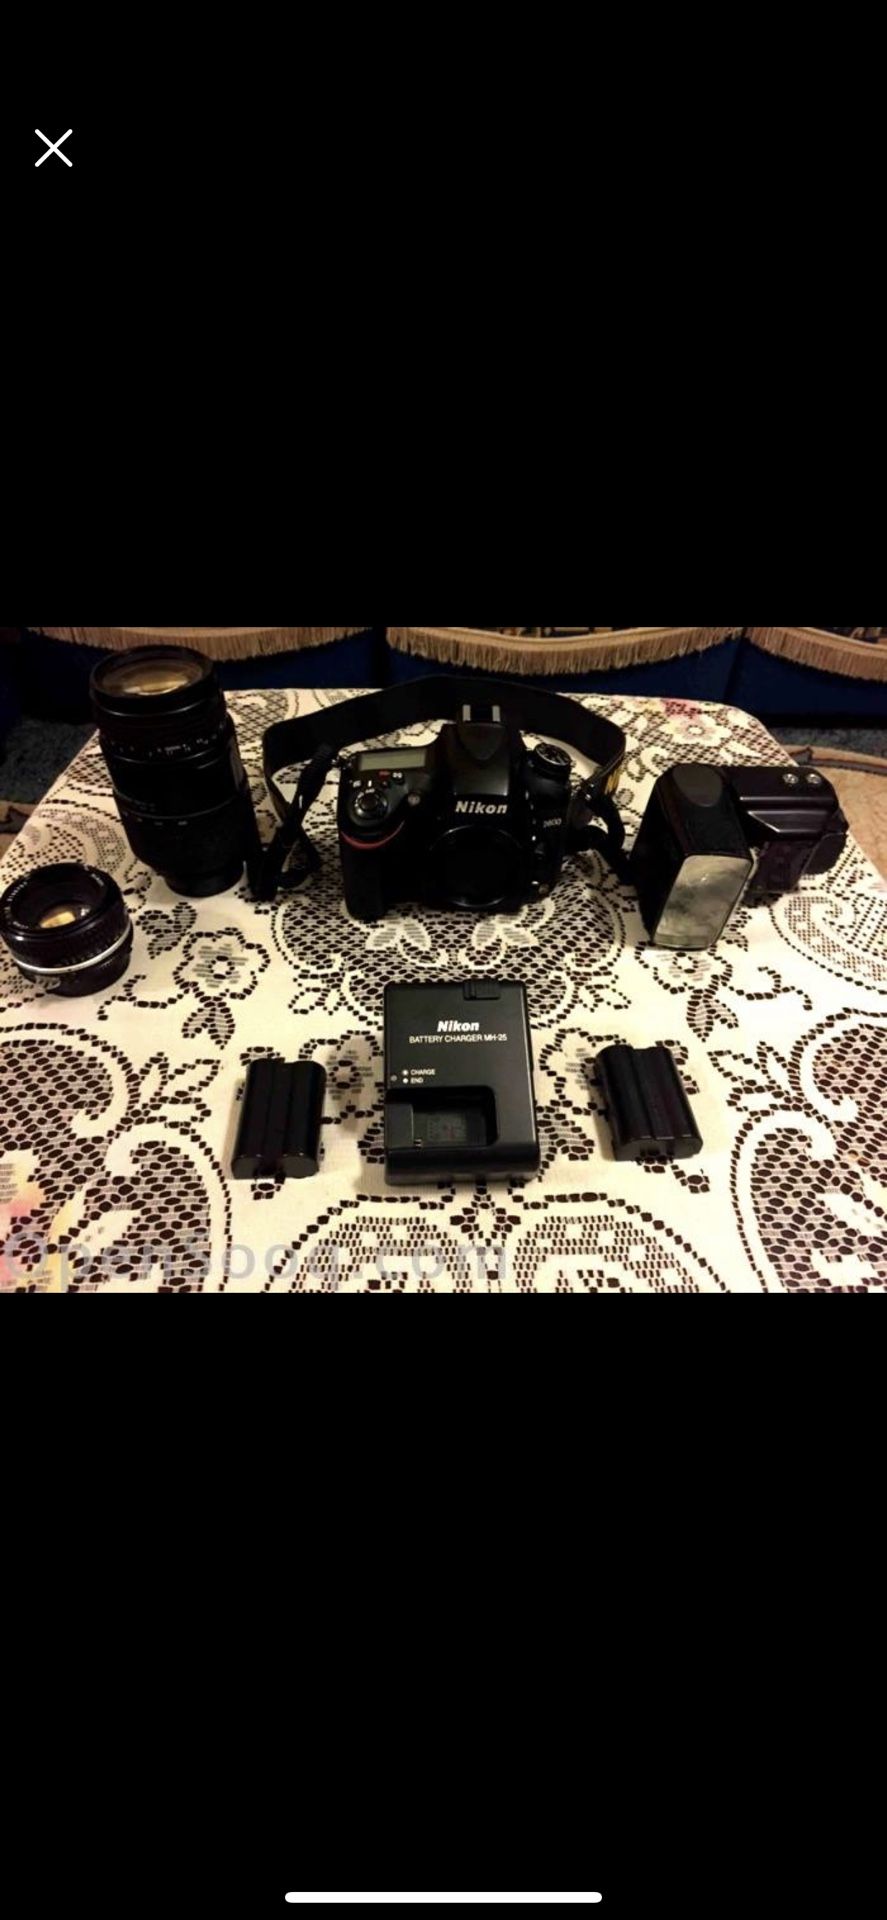 Nikon D600 full frame camera Kit!! 3 Nikon lenses & flash